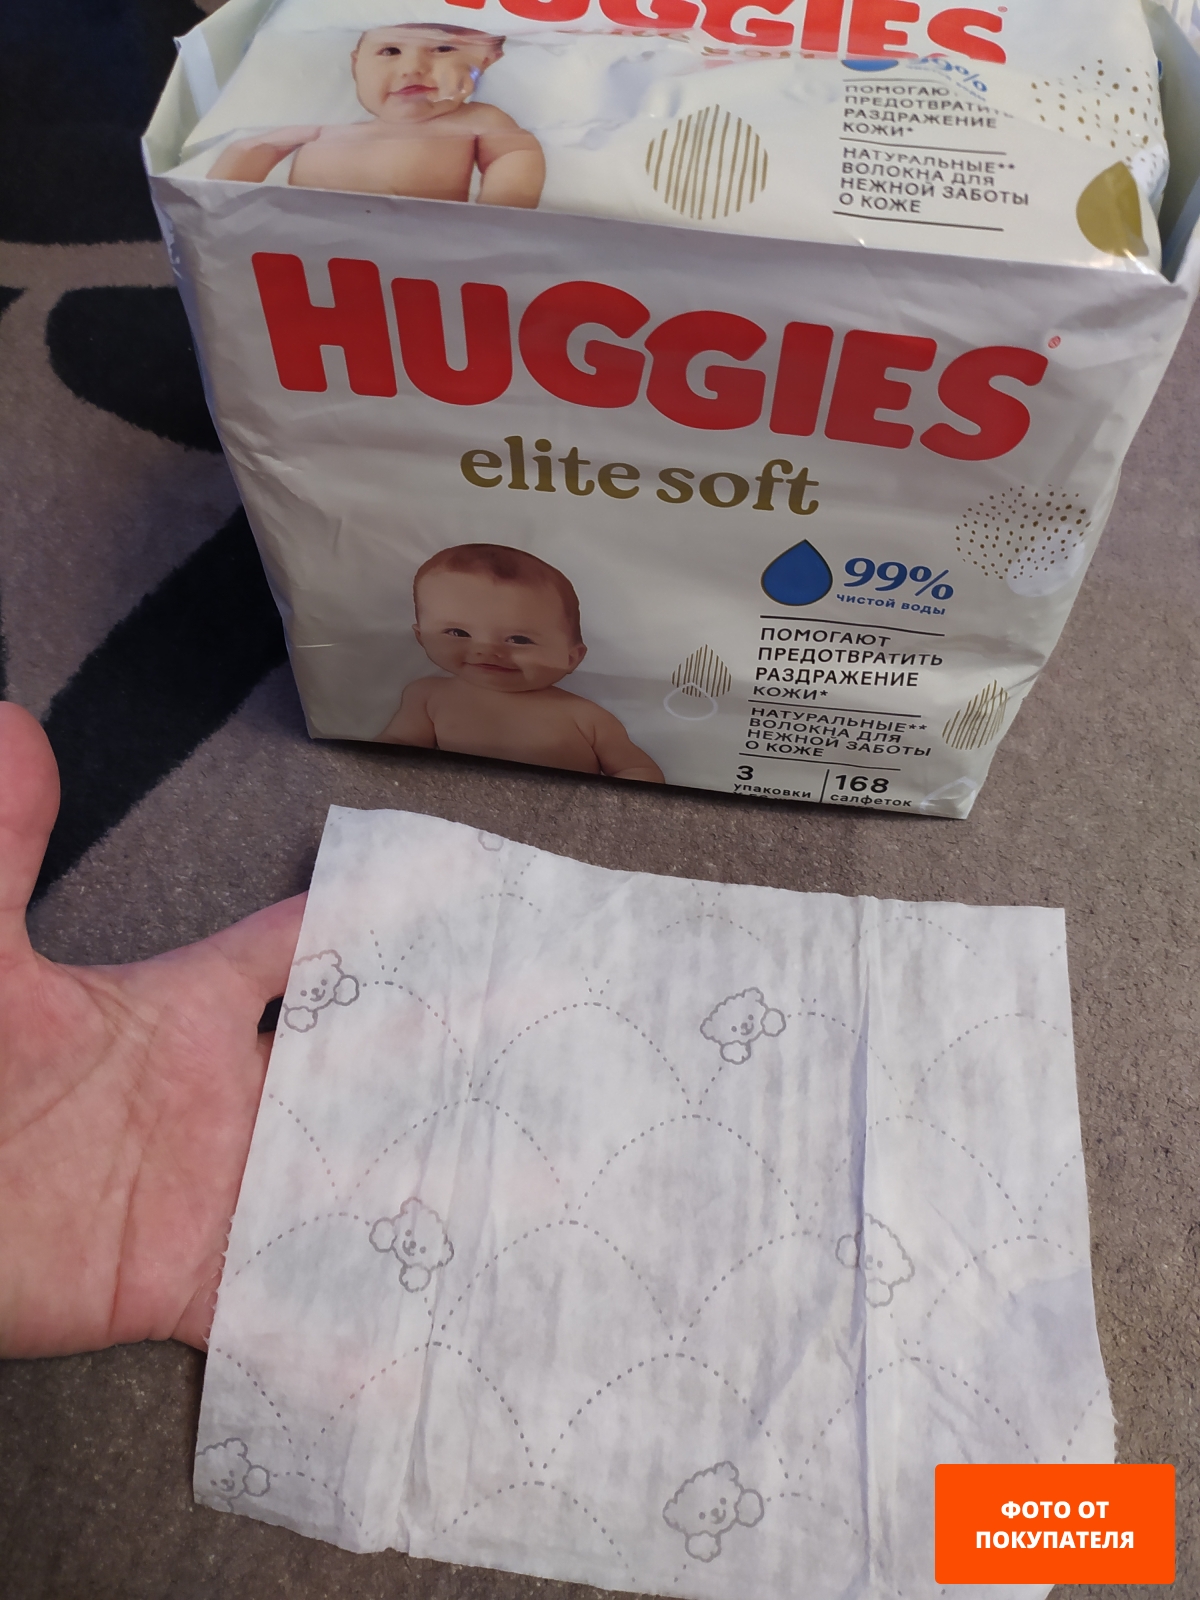 Салфетки влажные детские HUGGIES Elite Soft 168 штук (5029053573038) - Фото 2